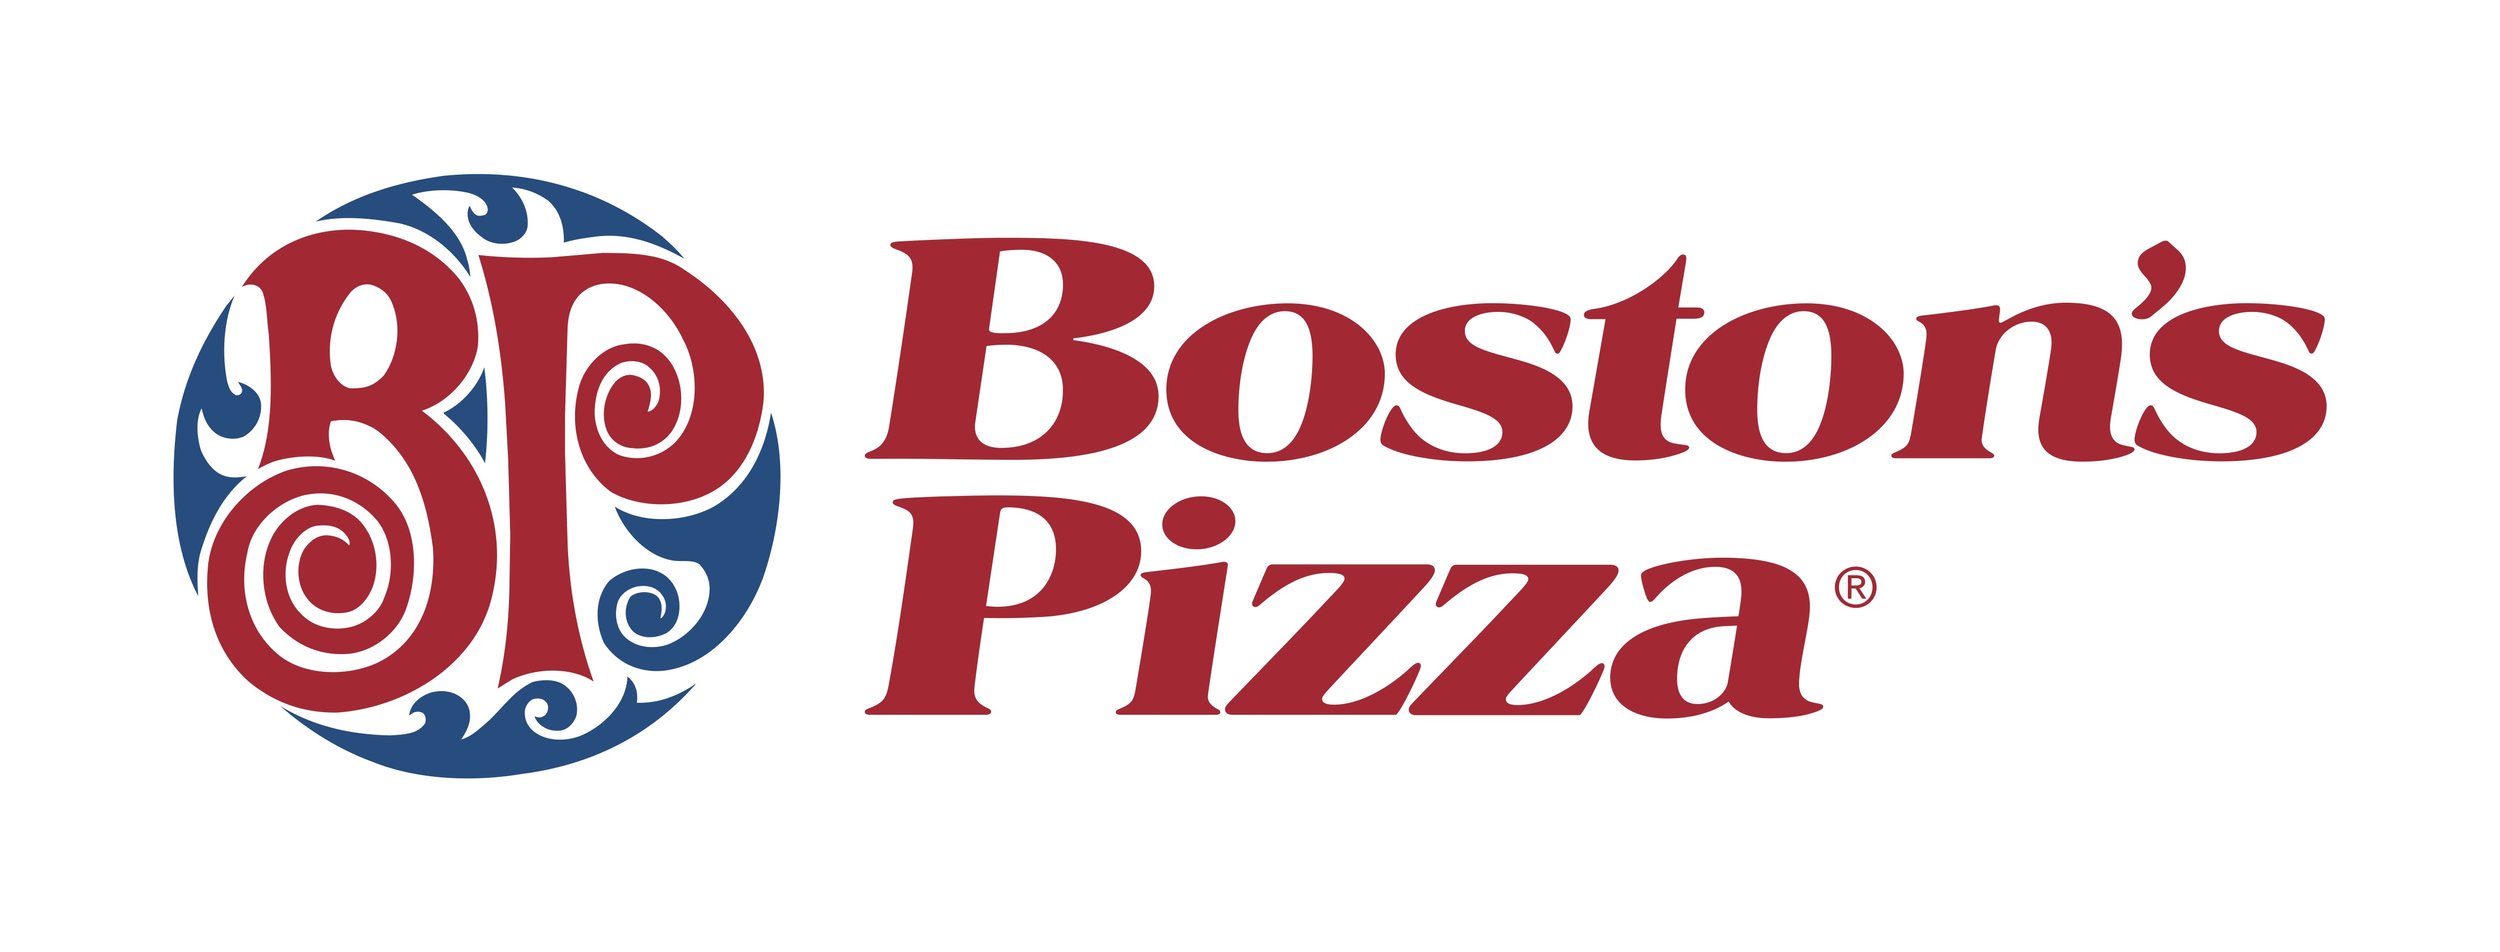 BostonsPizza_Logo_CMYK_02_Vrt_FullColor (1).jpg